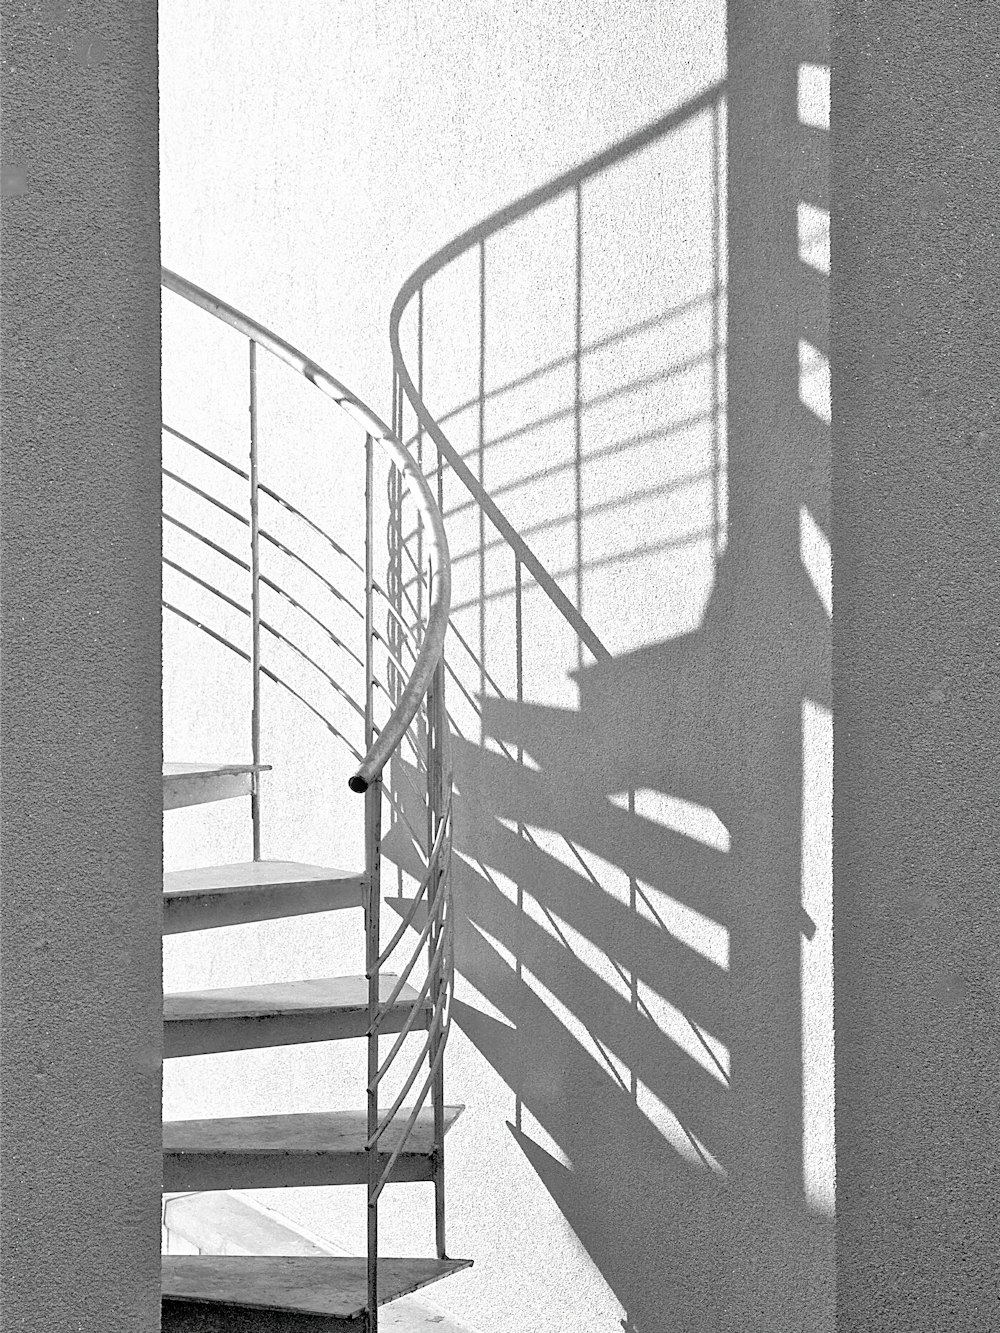 검은색 금속 난간이 있는 흰색 나선형 계단